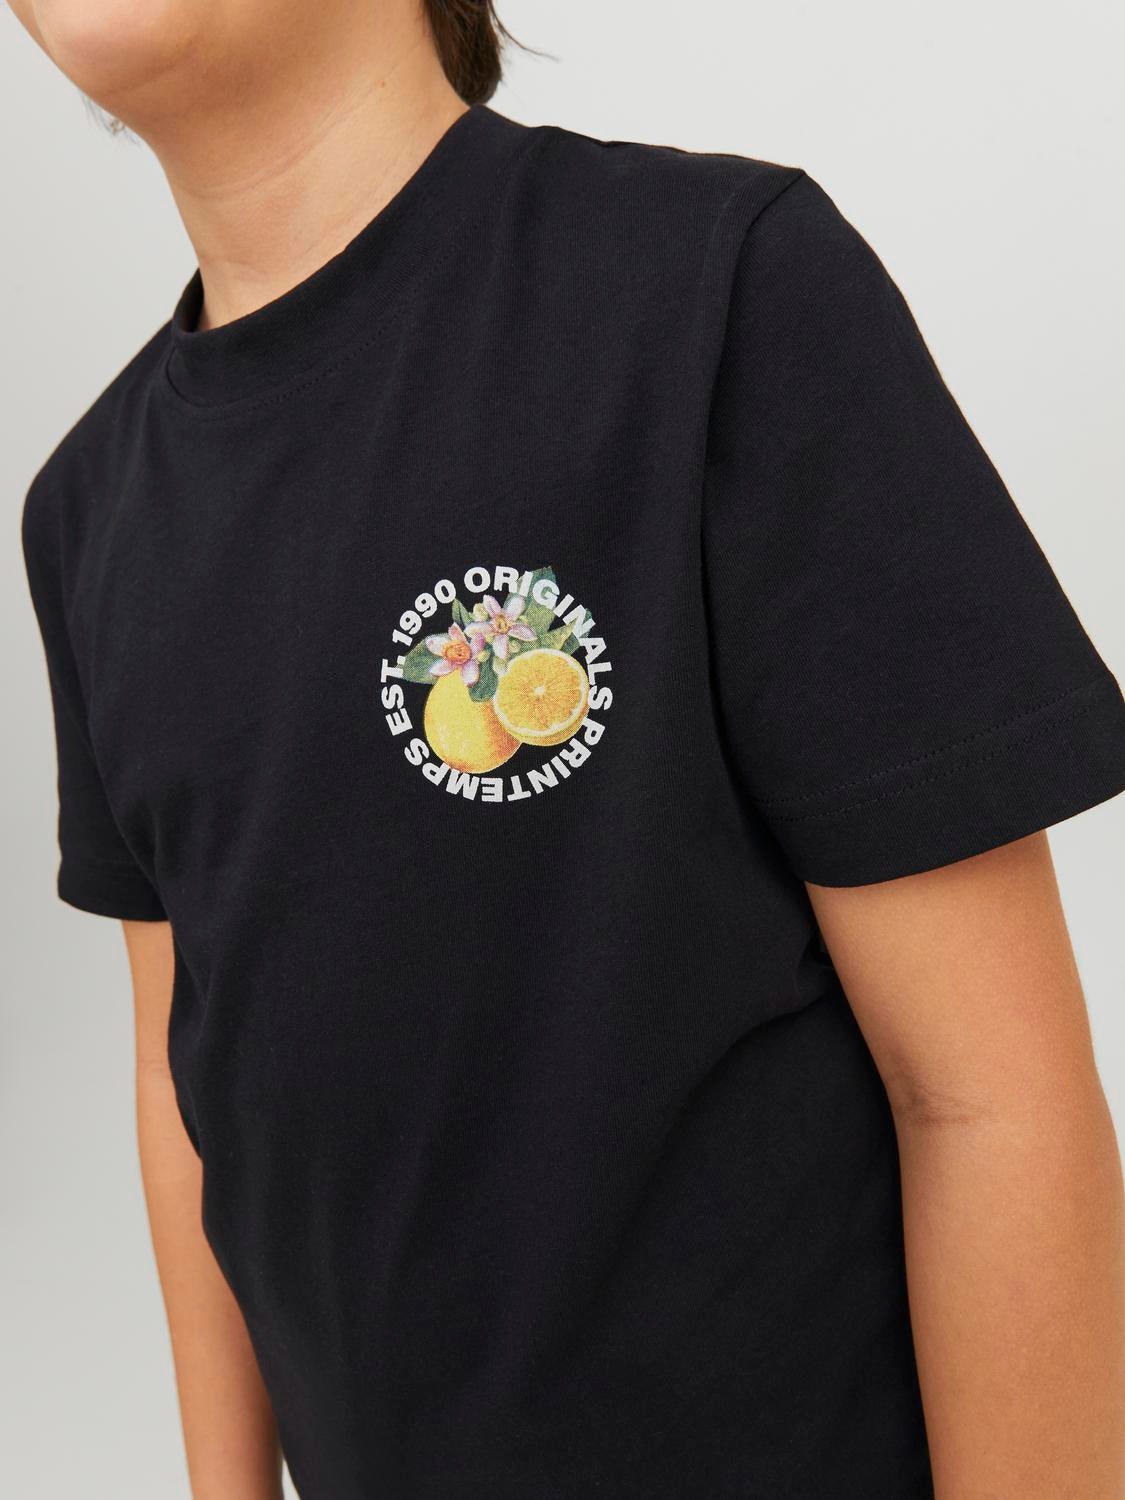 Jack & Jones T-shirt Fruits Pour les garçons -Black - 12230826